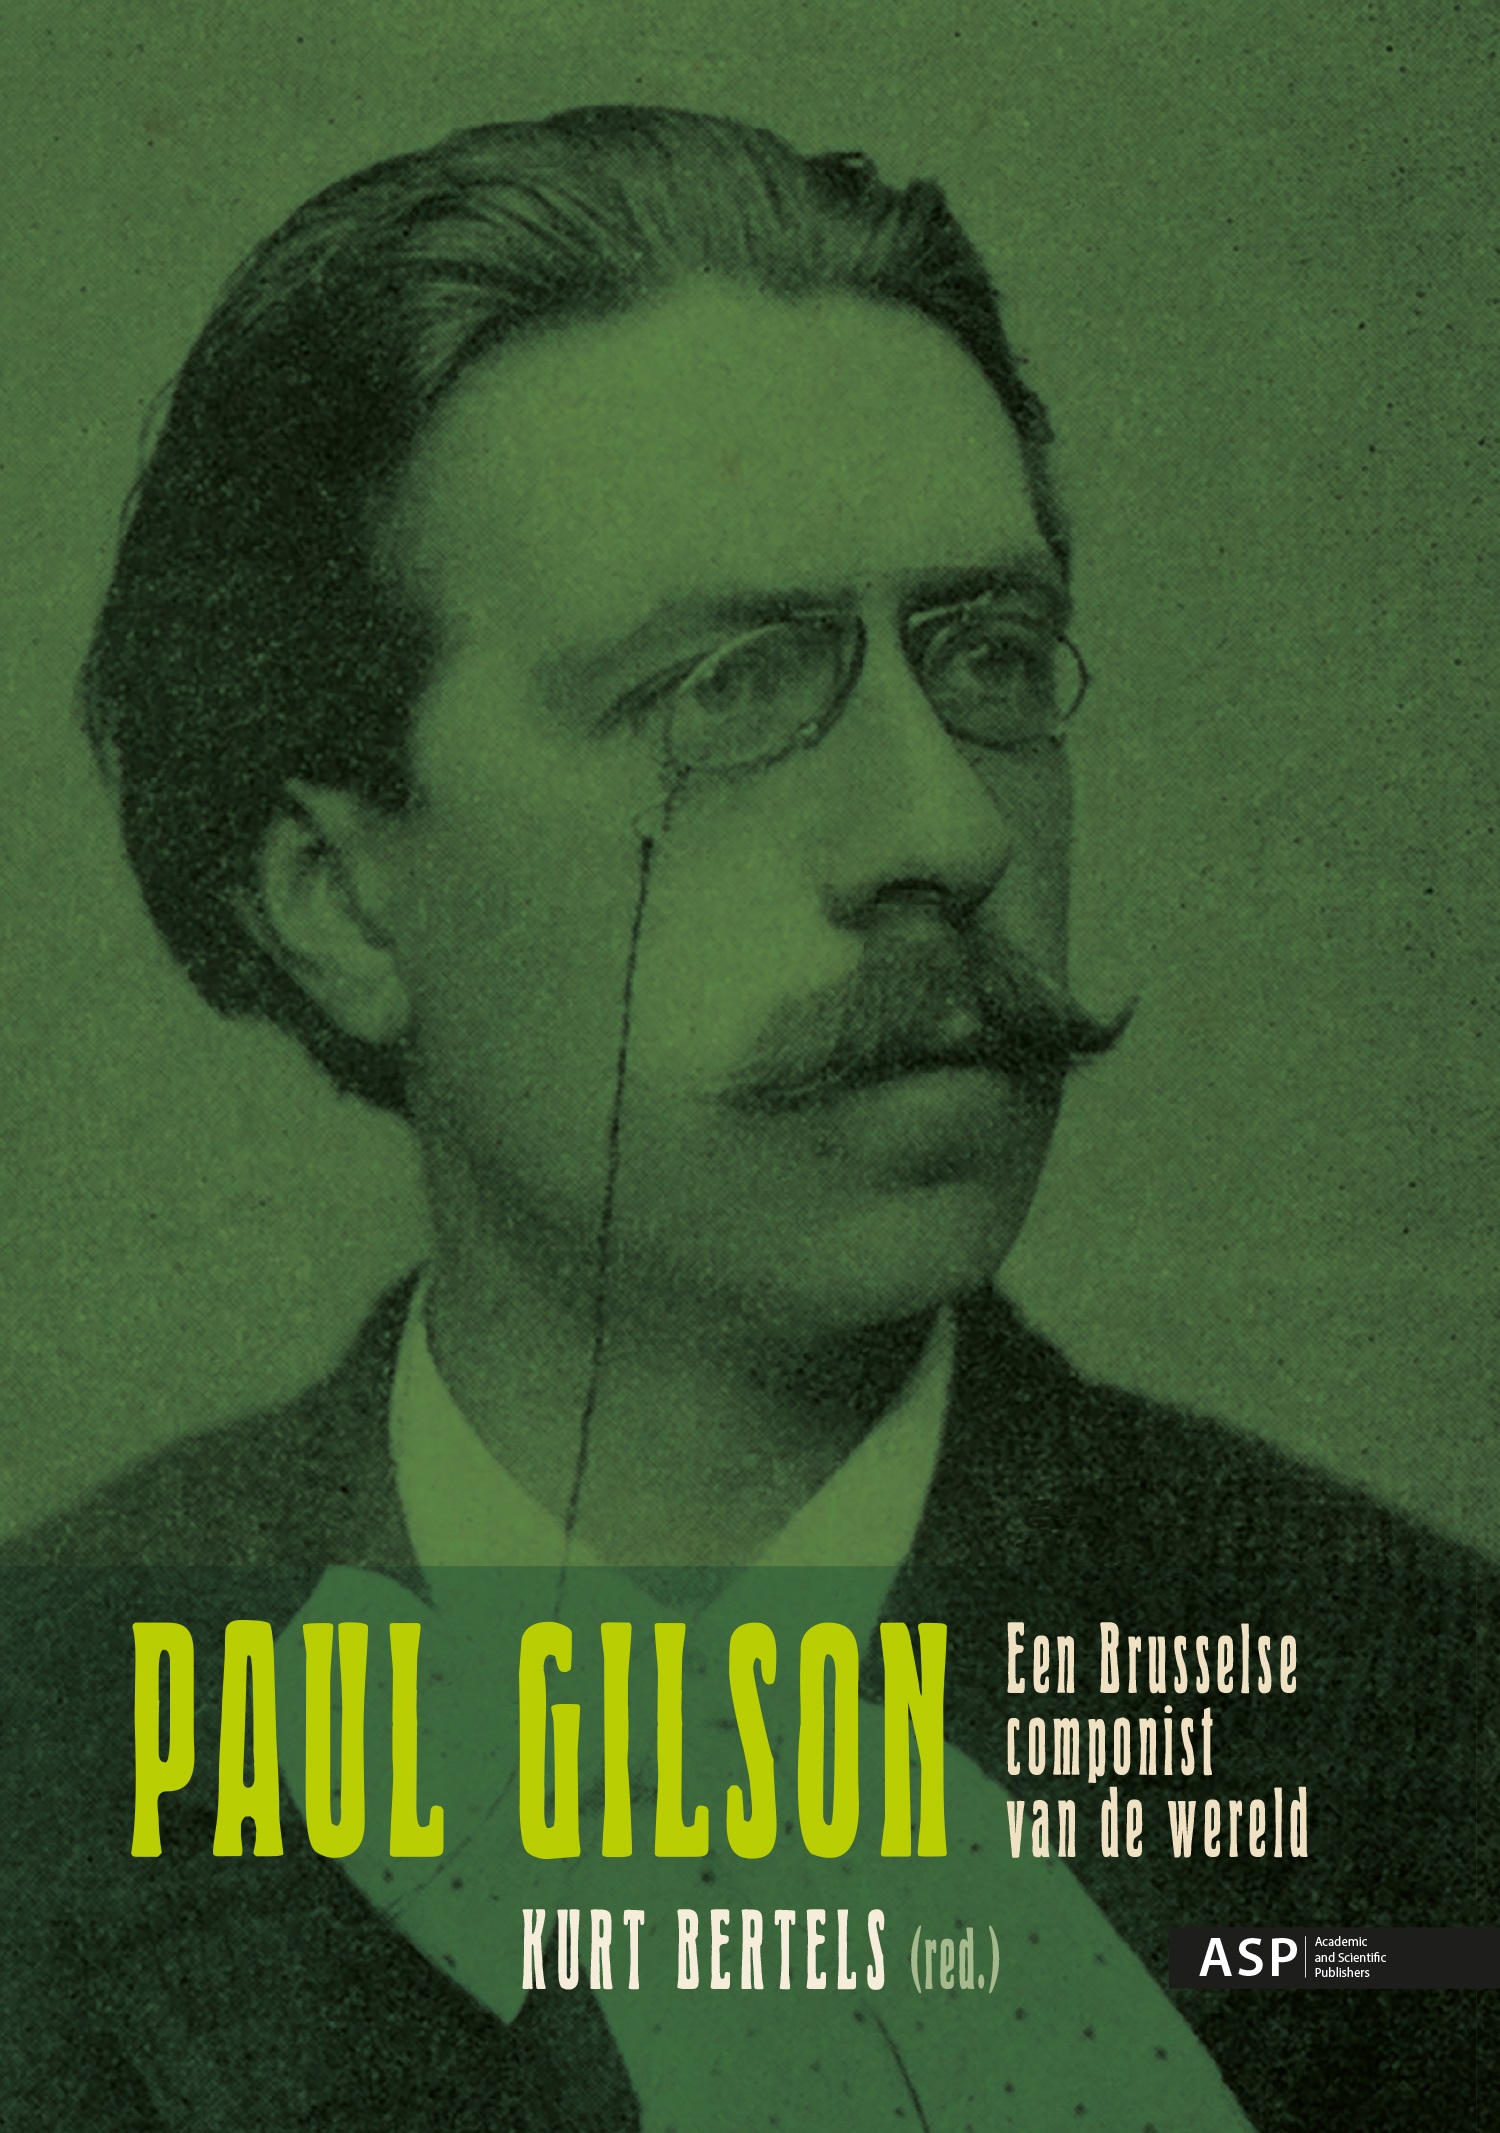 PAUL GILSON